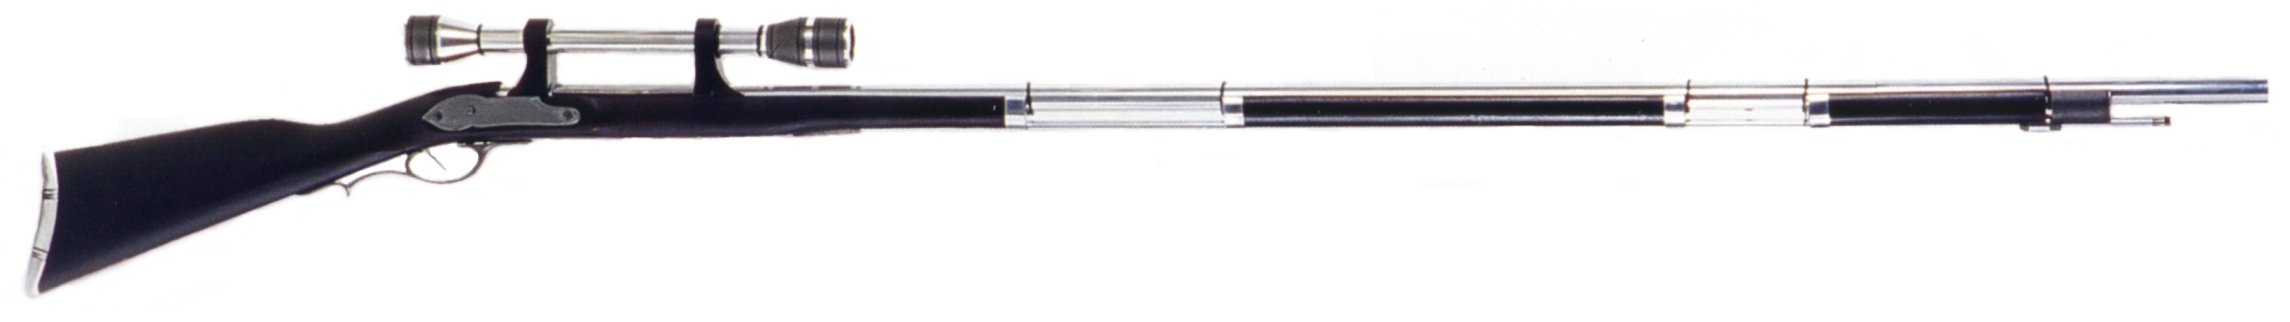 KiSteer 1284 Projectile Rifle